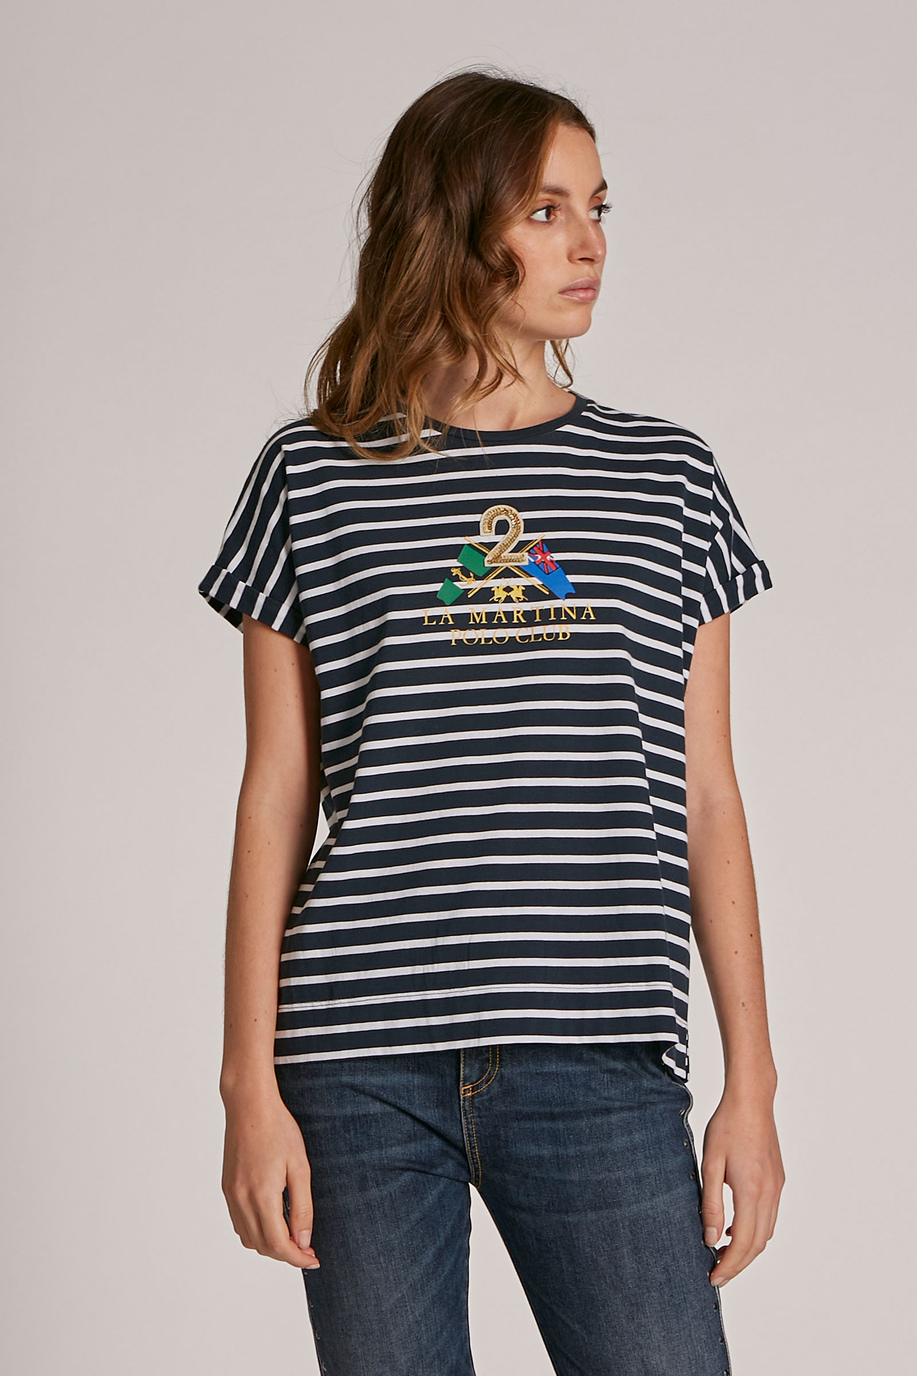 Camiseta de mujer de algodón con logotipo, modelo holgado - Camisetas | La Martina - Official Online Shop